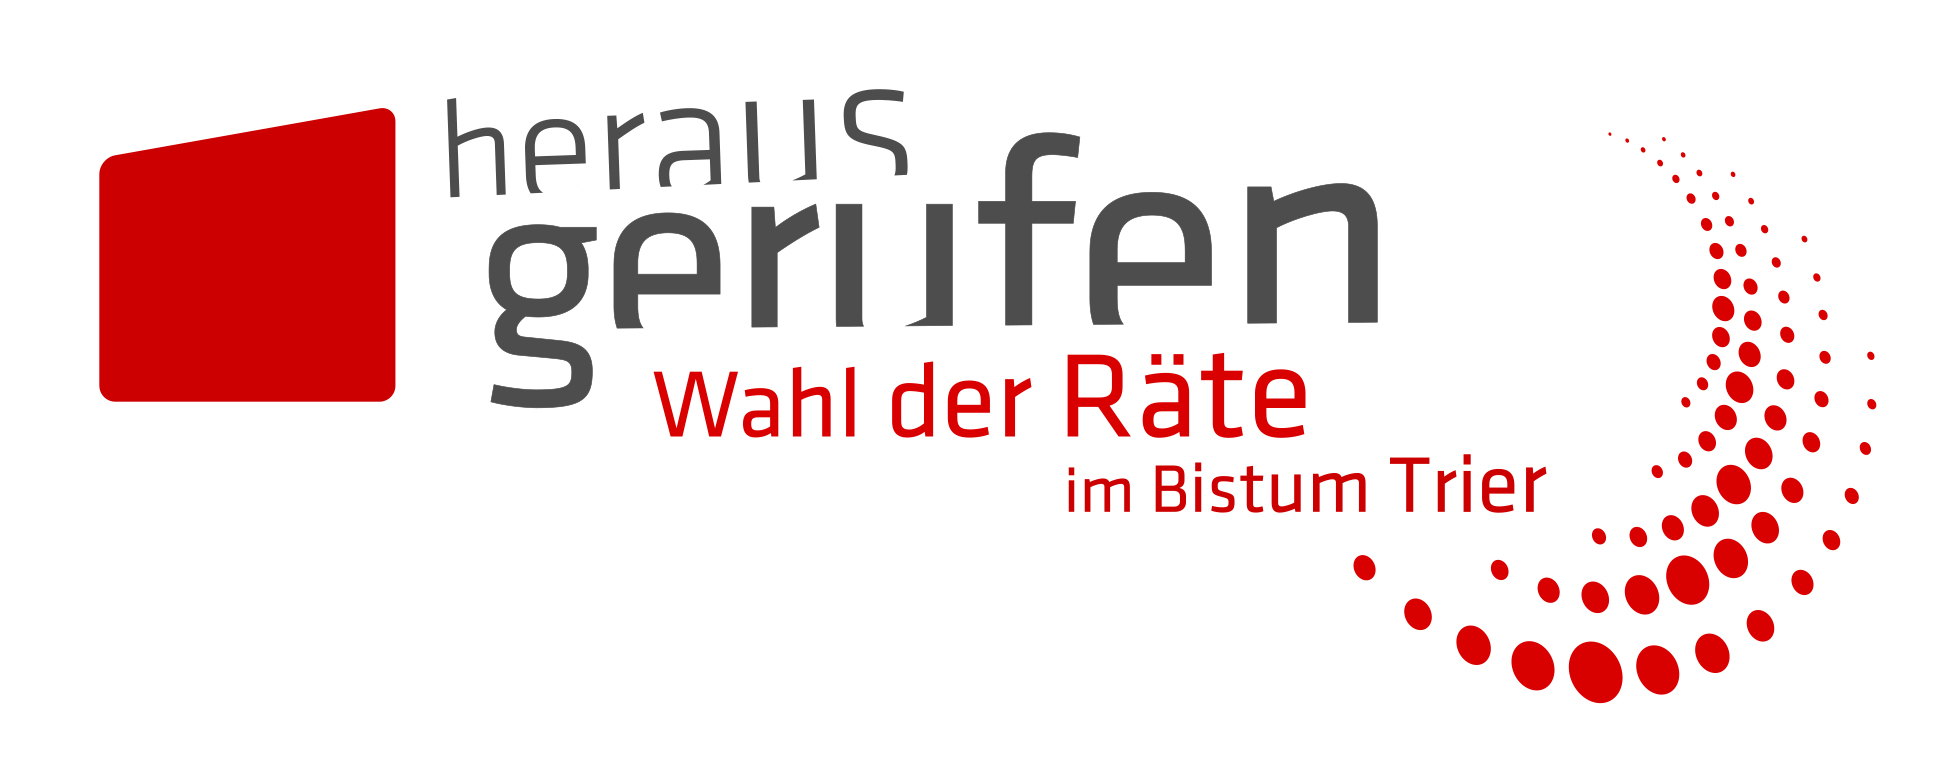 logo_wahl_bistum_trier